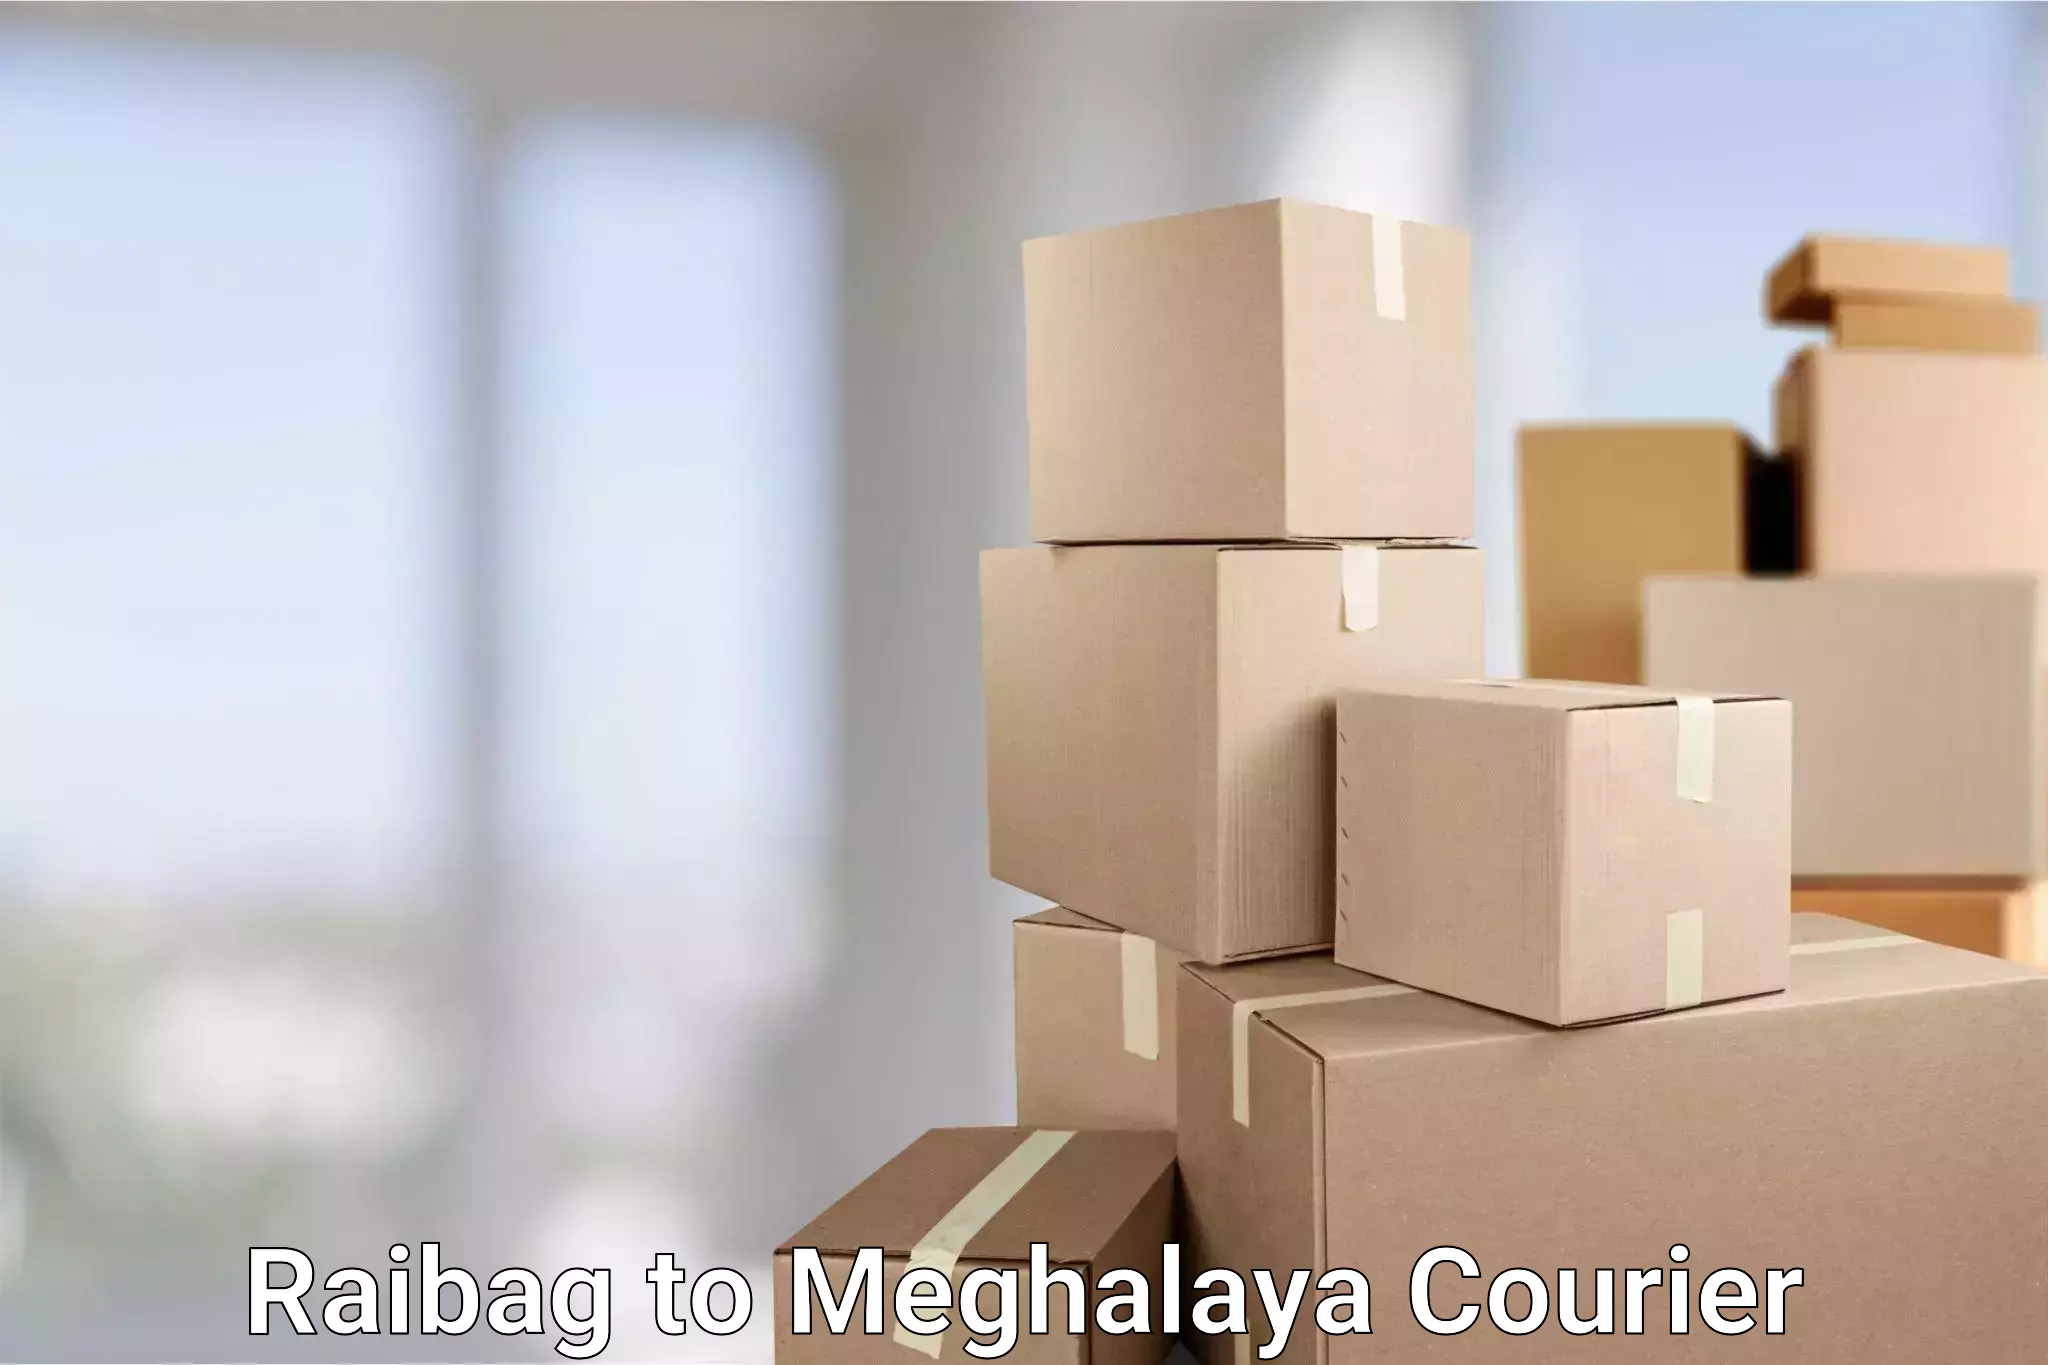 Global shipping solutions Raibag to Meghalaya